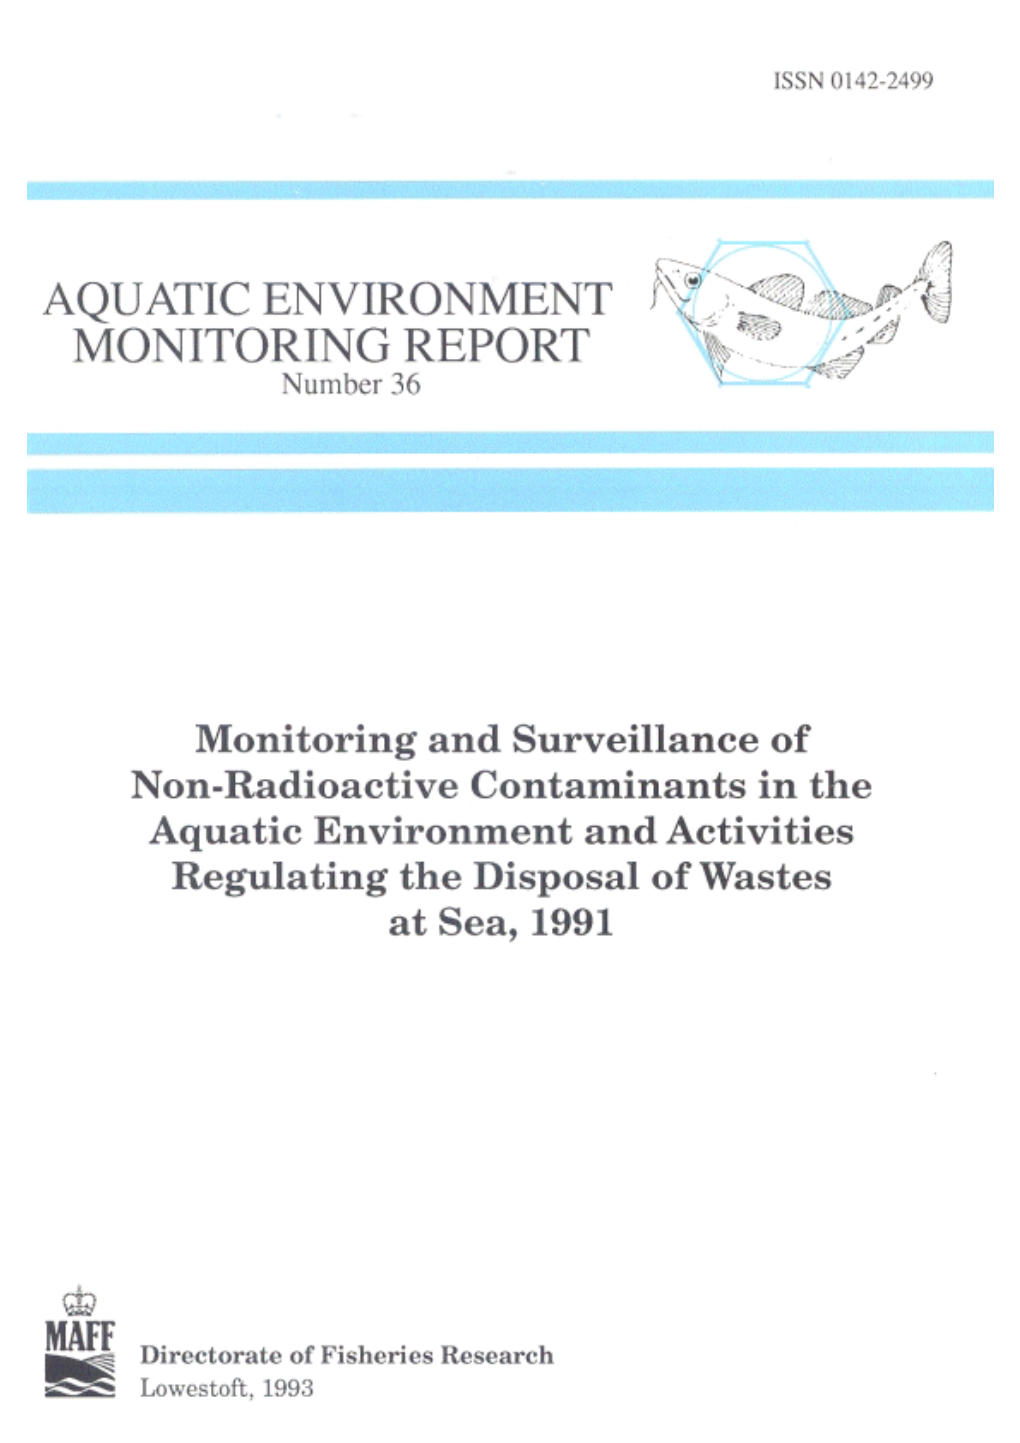 Monitoring and Surveillance of Non-Radioactive Contaminants in the Aquatic Environment and Activities Regulating the Disposal of Wastes at Sea, 1991